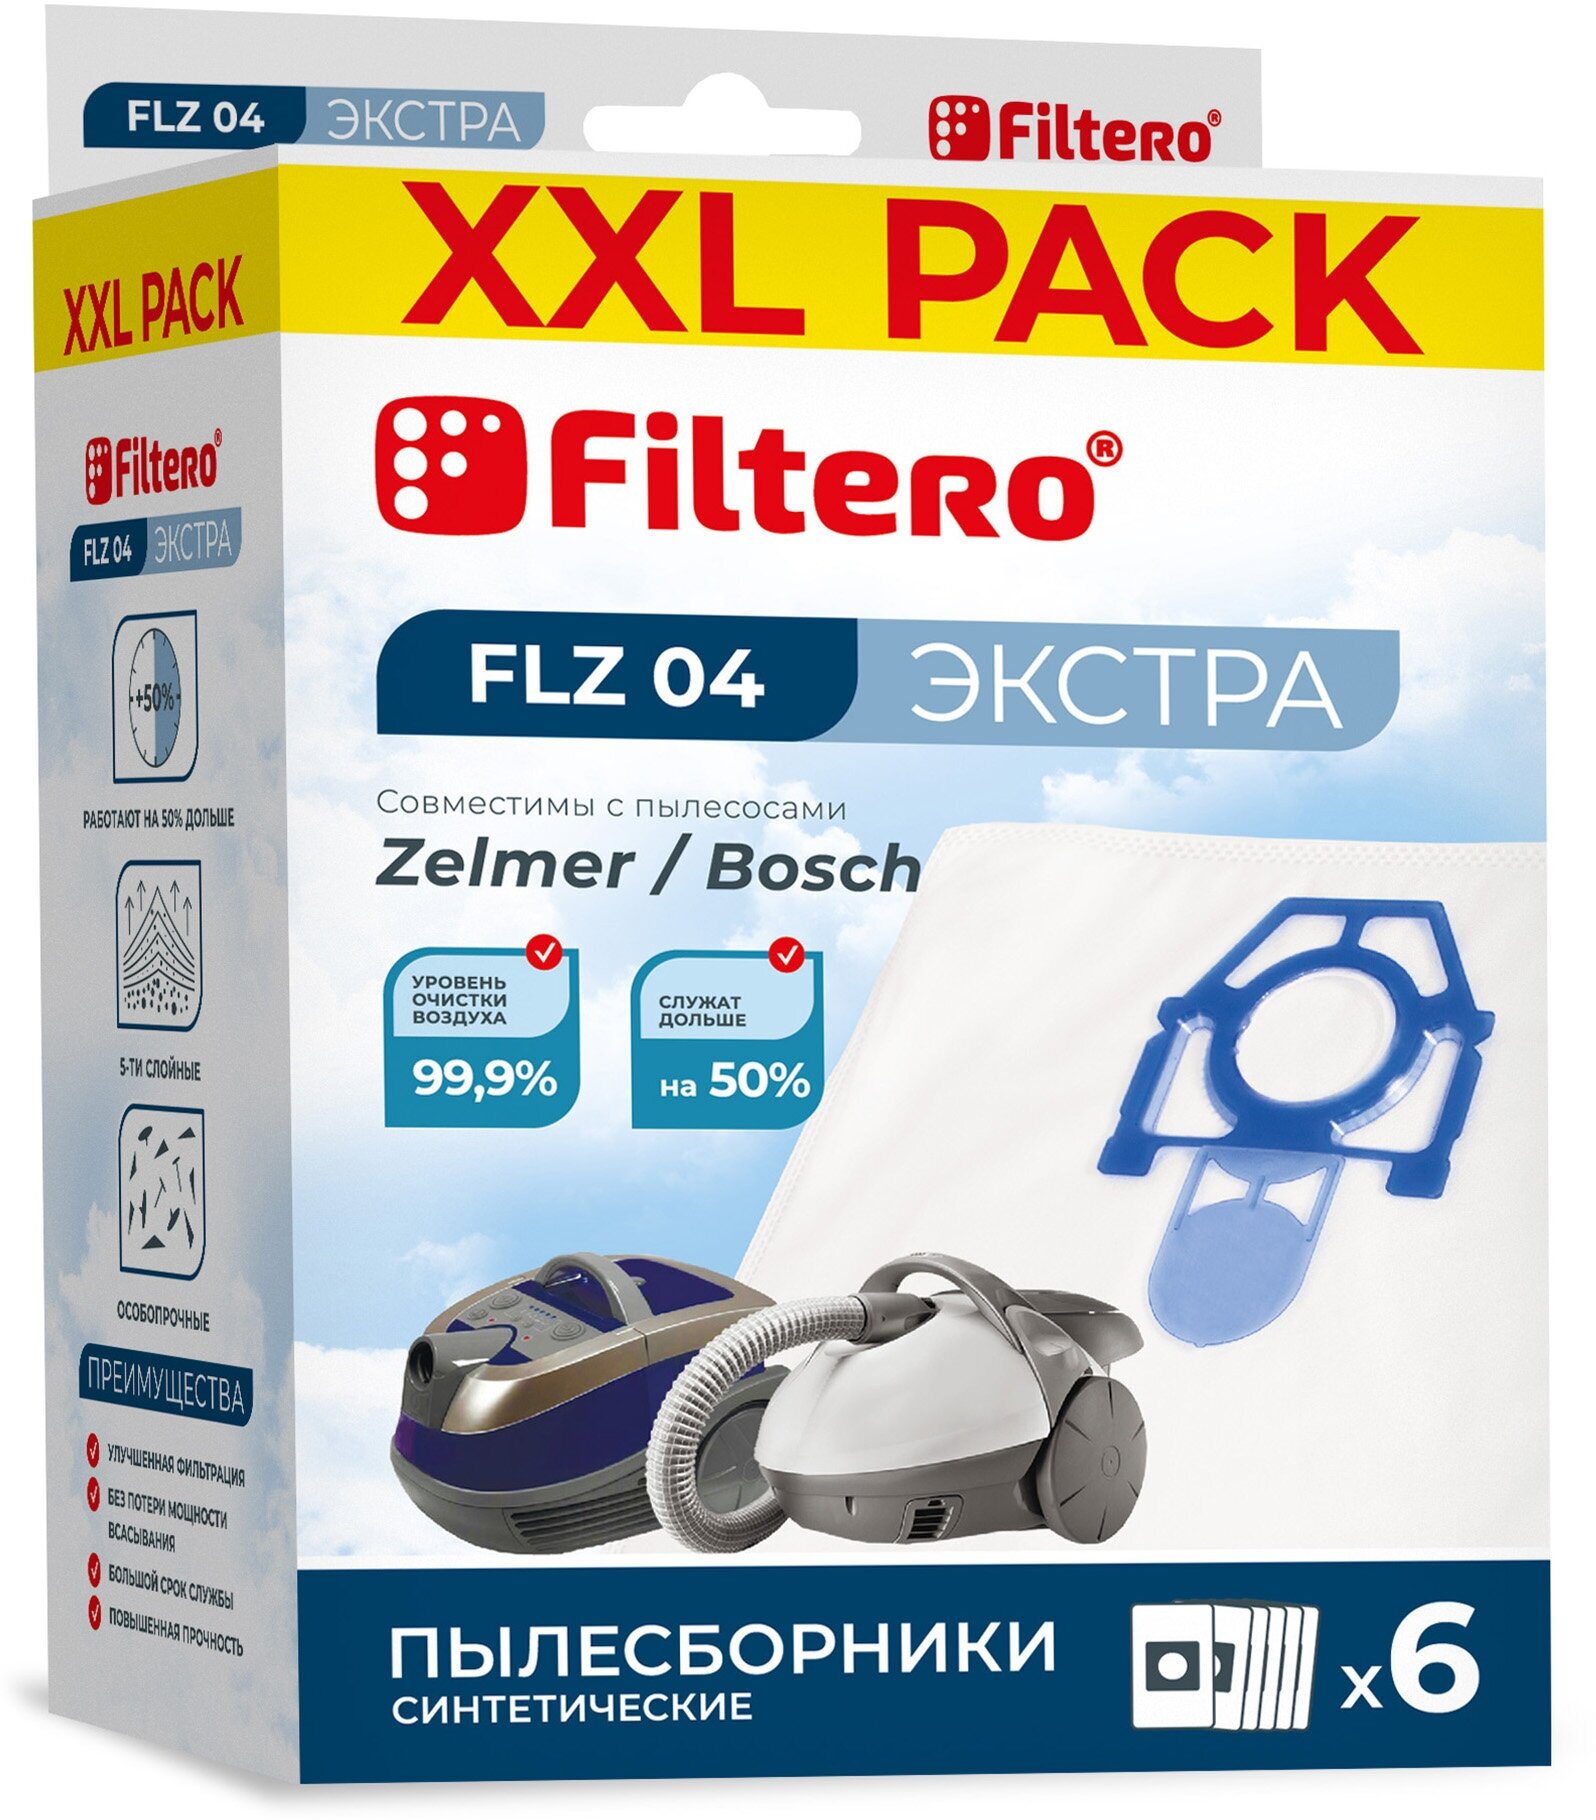 Пылесборники FILTERO FLZ 04 (6) XXL PACK, экстра, 6 шт.